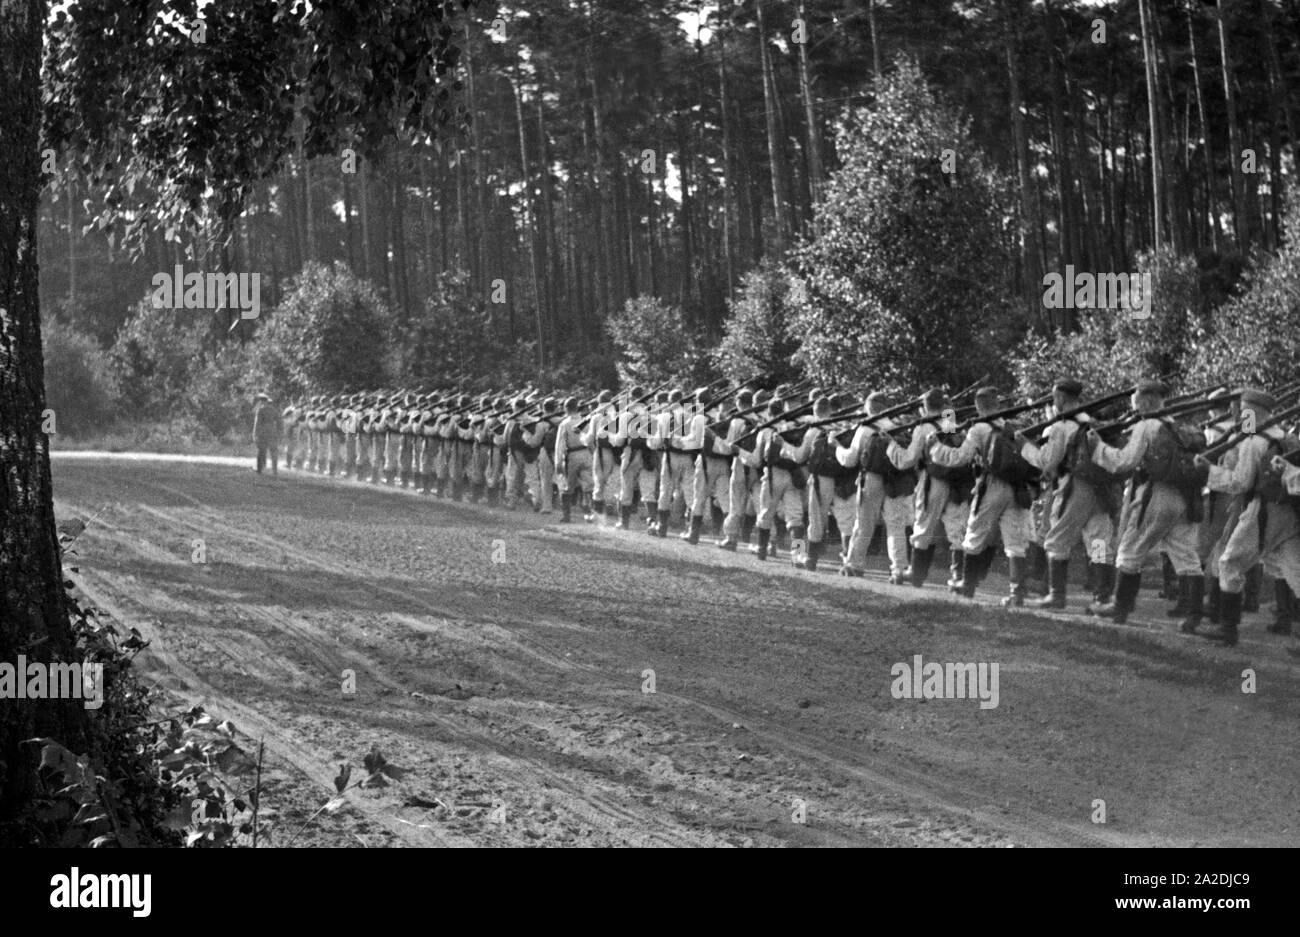 Eine Staffel mit Rekruten der Flieger Ausbildungsstelle Schönwalde marschiert, Deutschland 1930er Jahre. A squadron of recruits marching through a forest, Germany 1930s. Stock Photo